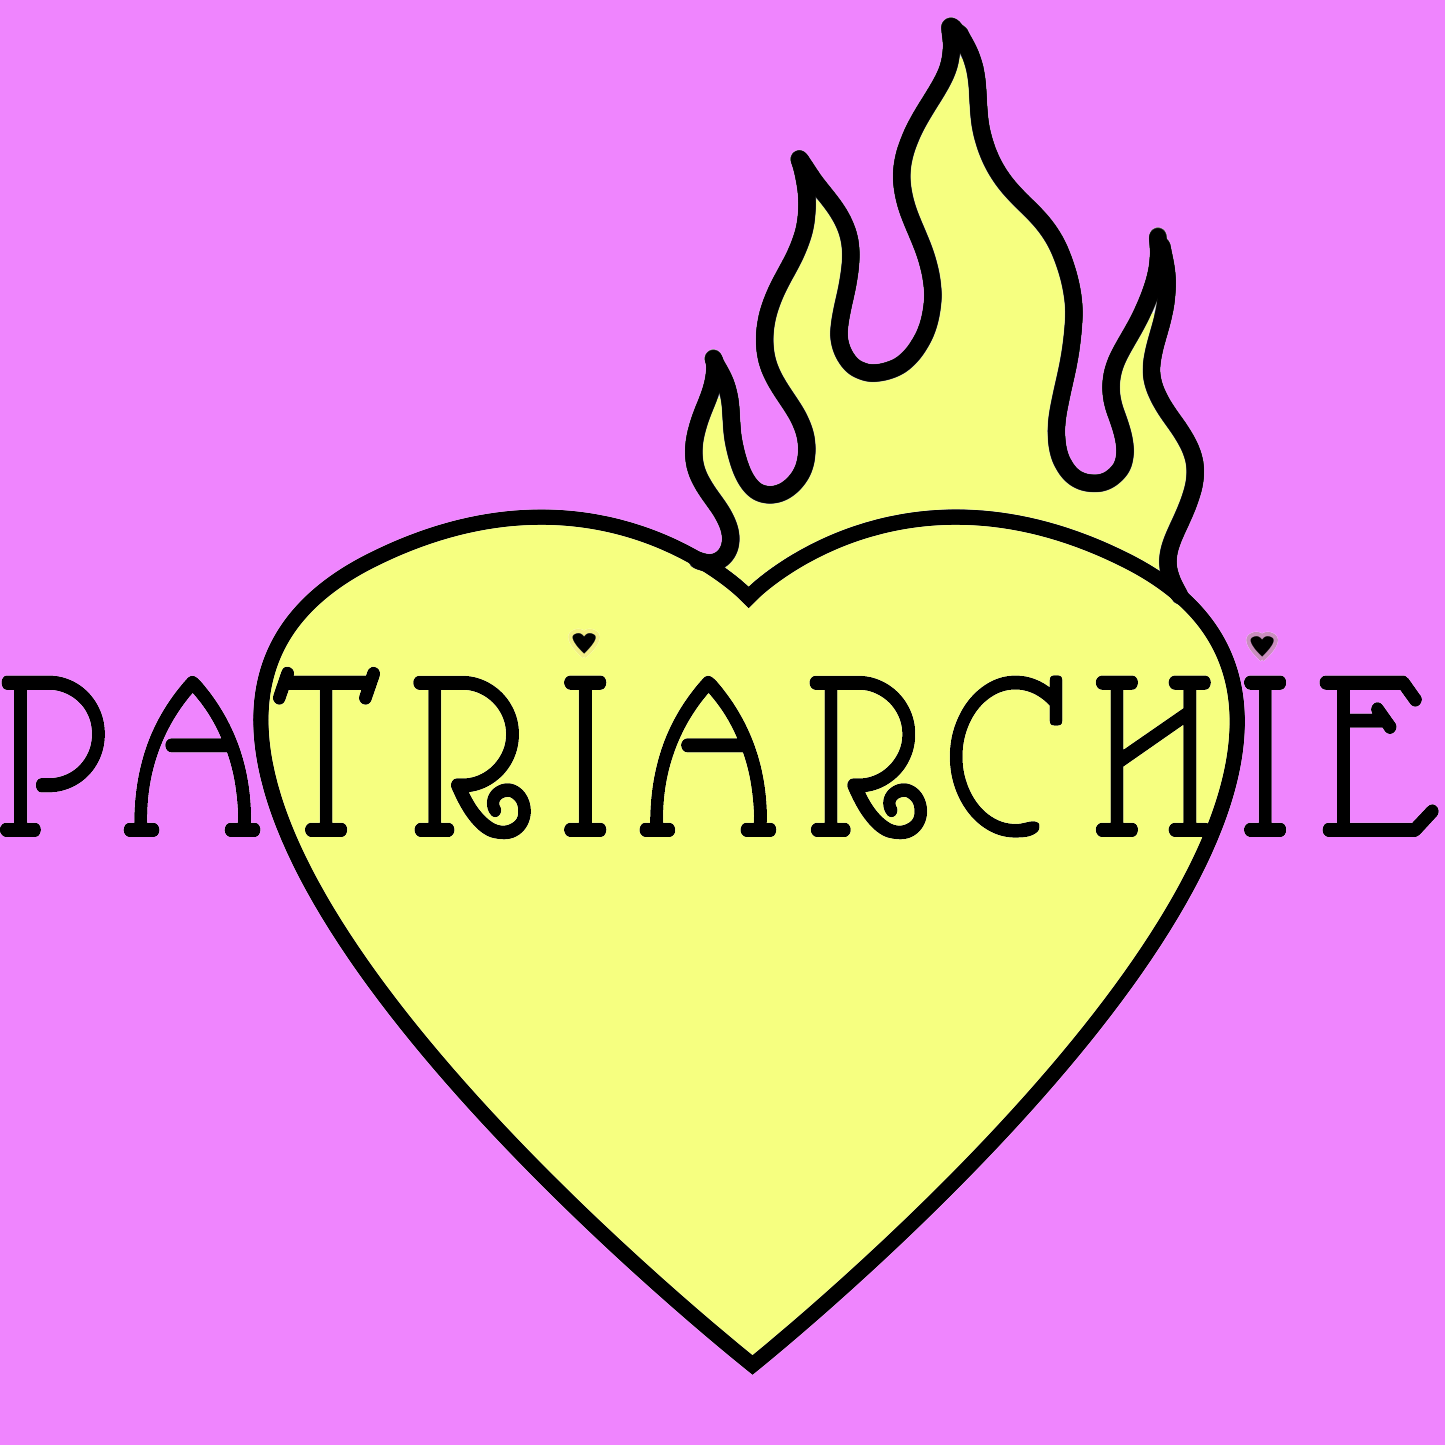 Patriarchie